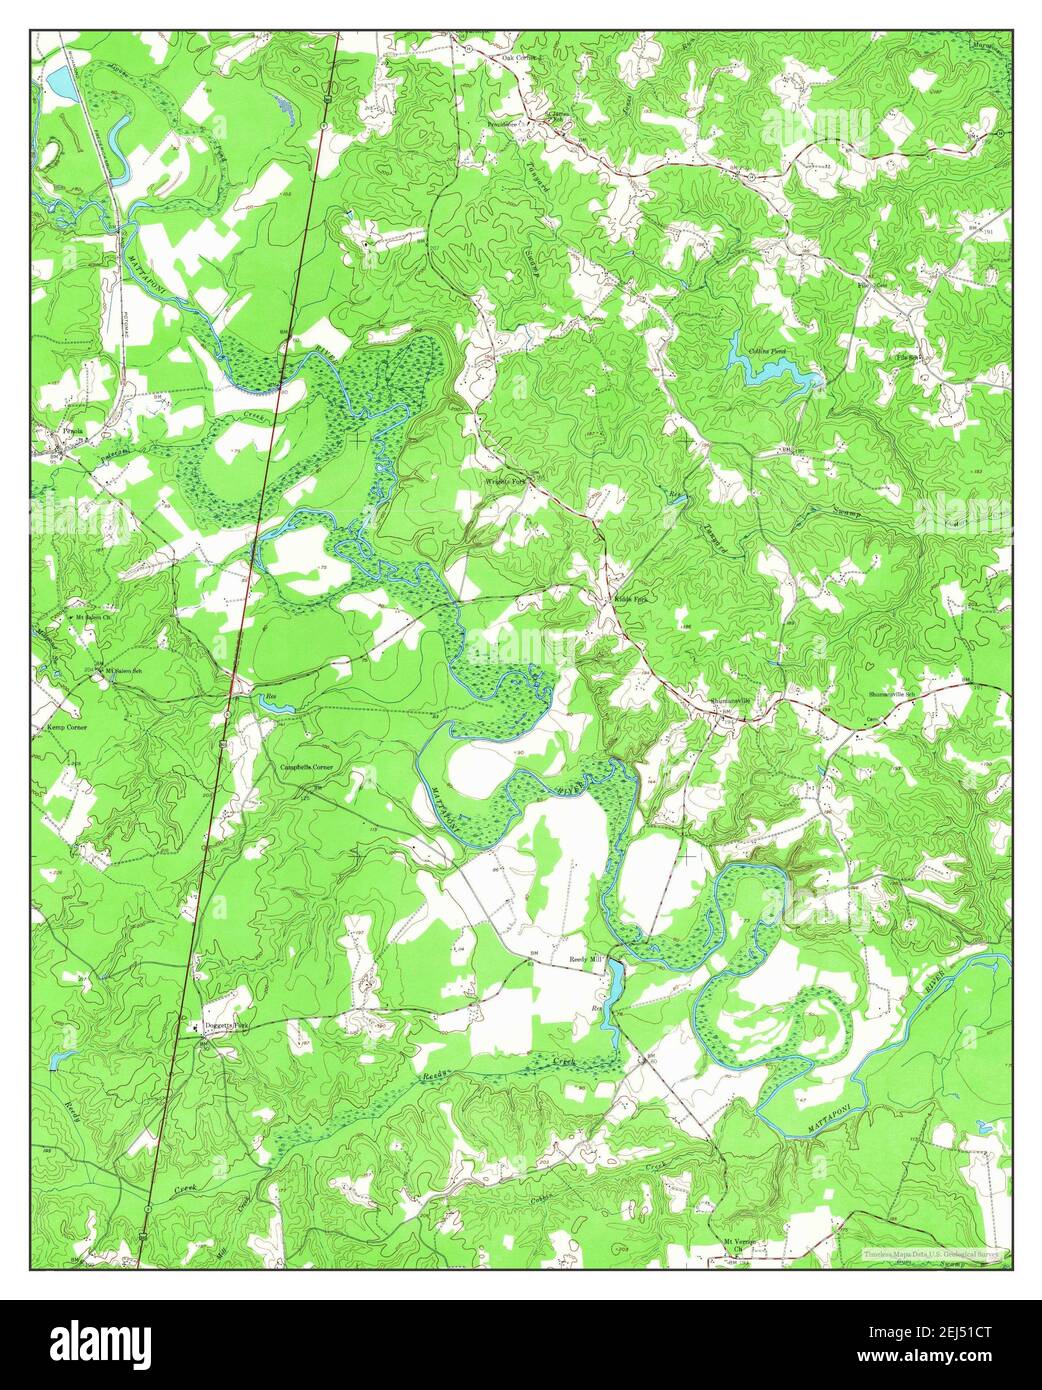 Penola, Virginie, carte 1951, 1:24000, États-Unis d'Amérique par Timeless Maps, données U.S. Geological Survey Banque D'Images